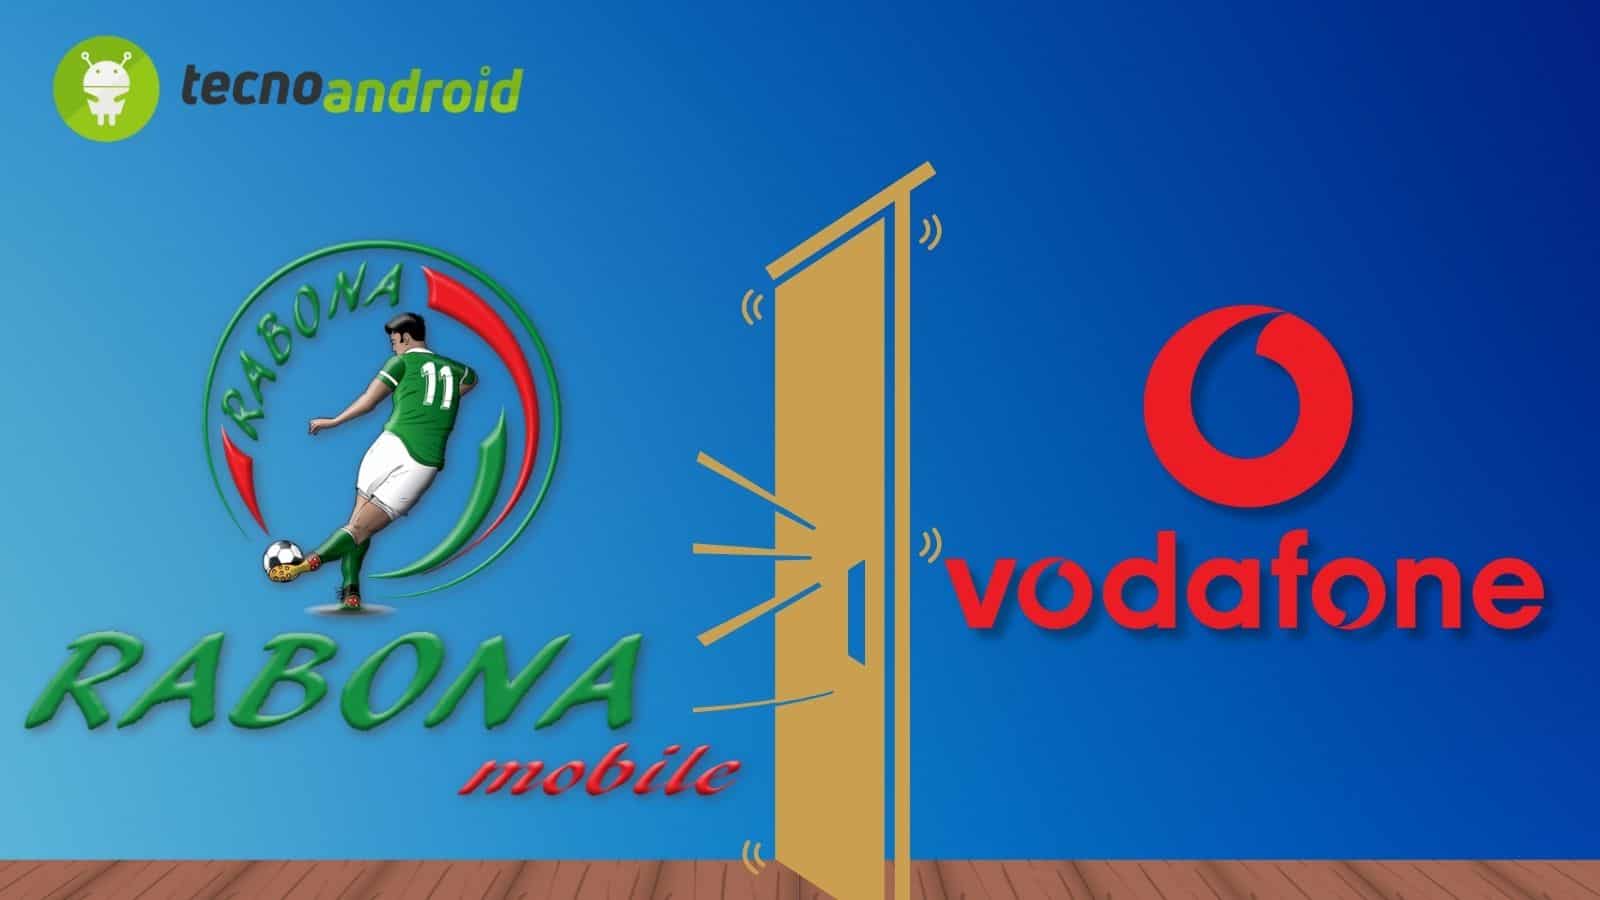  Rabona Mobile e Vodafone: nuovi sviluppi, cosa accadrà agli utenti?